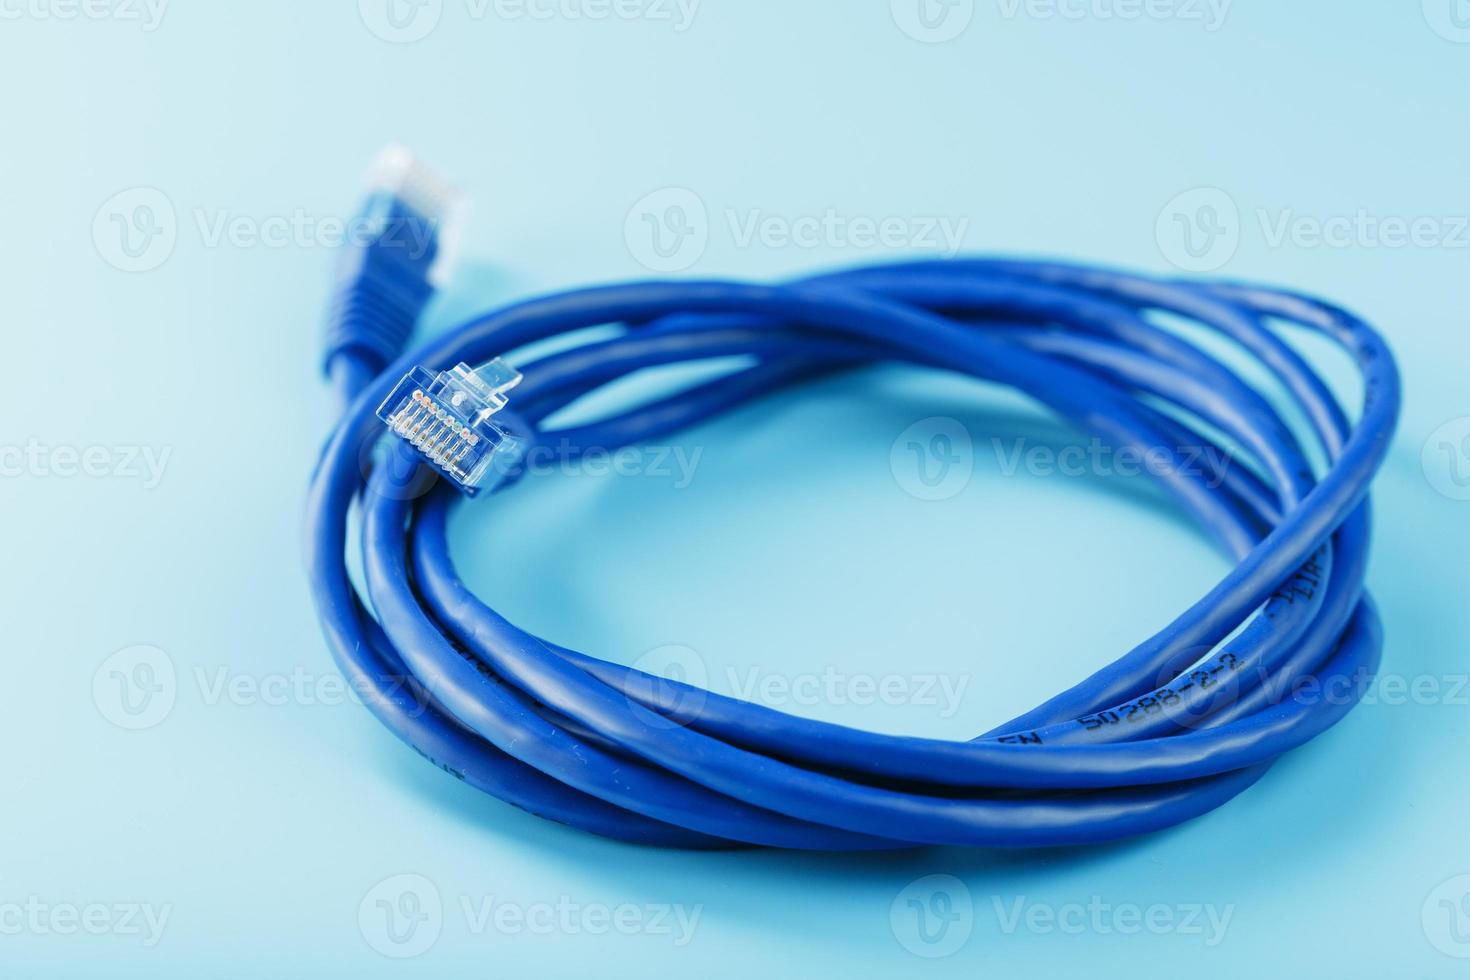 una bobina de un cable de red de Internet para la transmisión de datos sobre un fondo azul foto